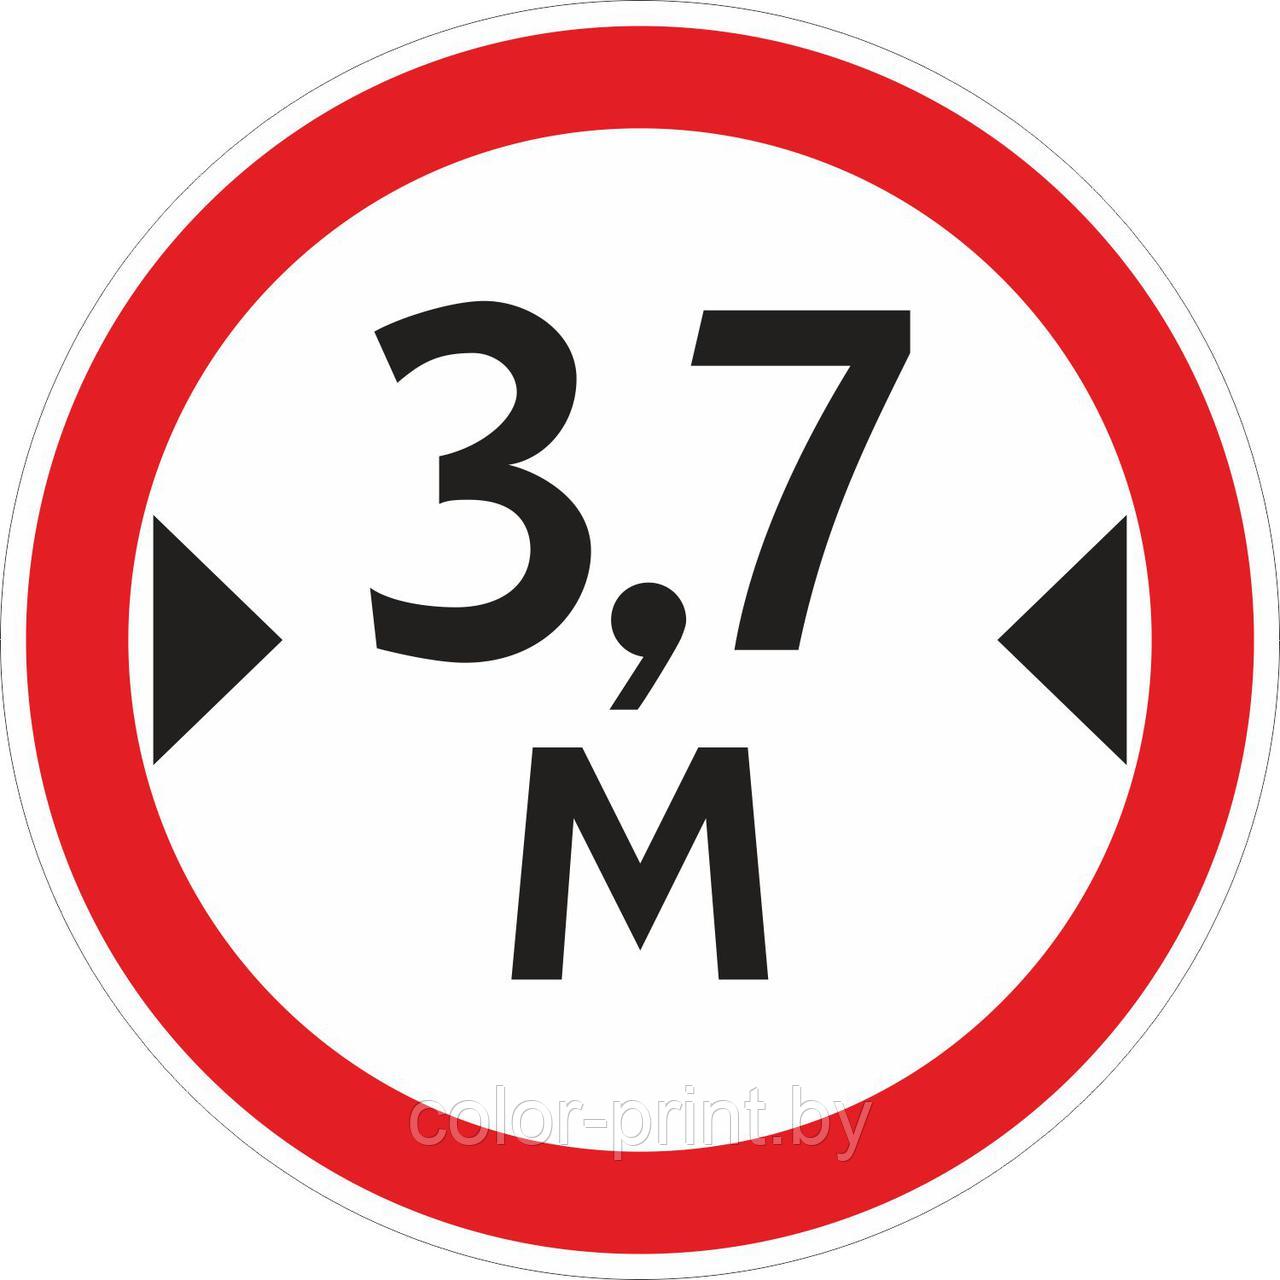 Наклейка ПВХ "Ограничение ширины проезда 3.7м" 500*500мм